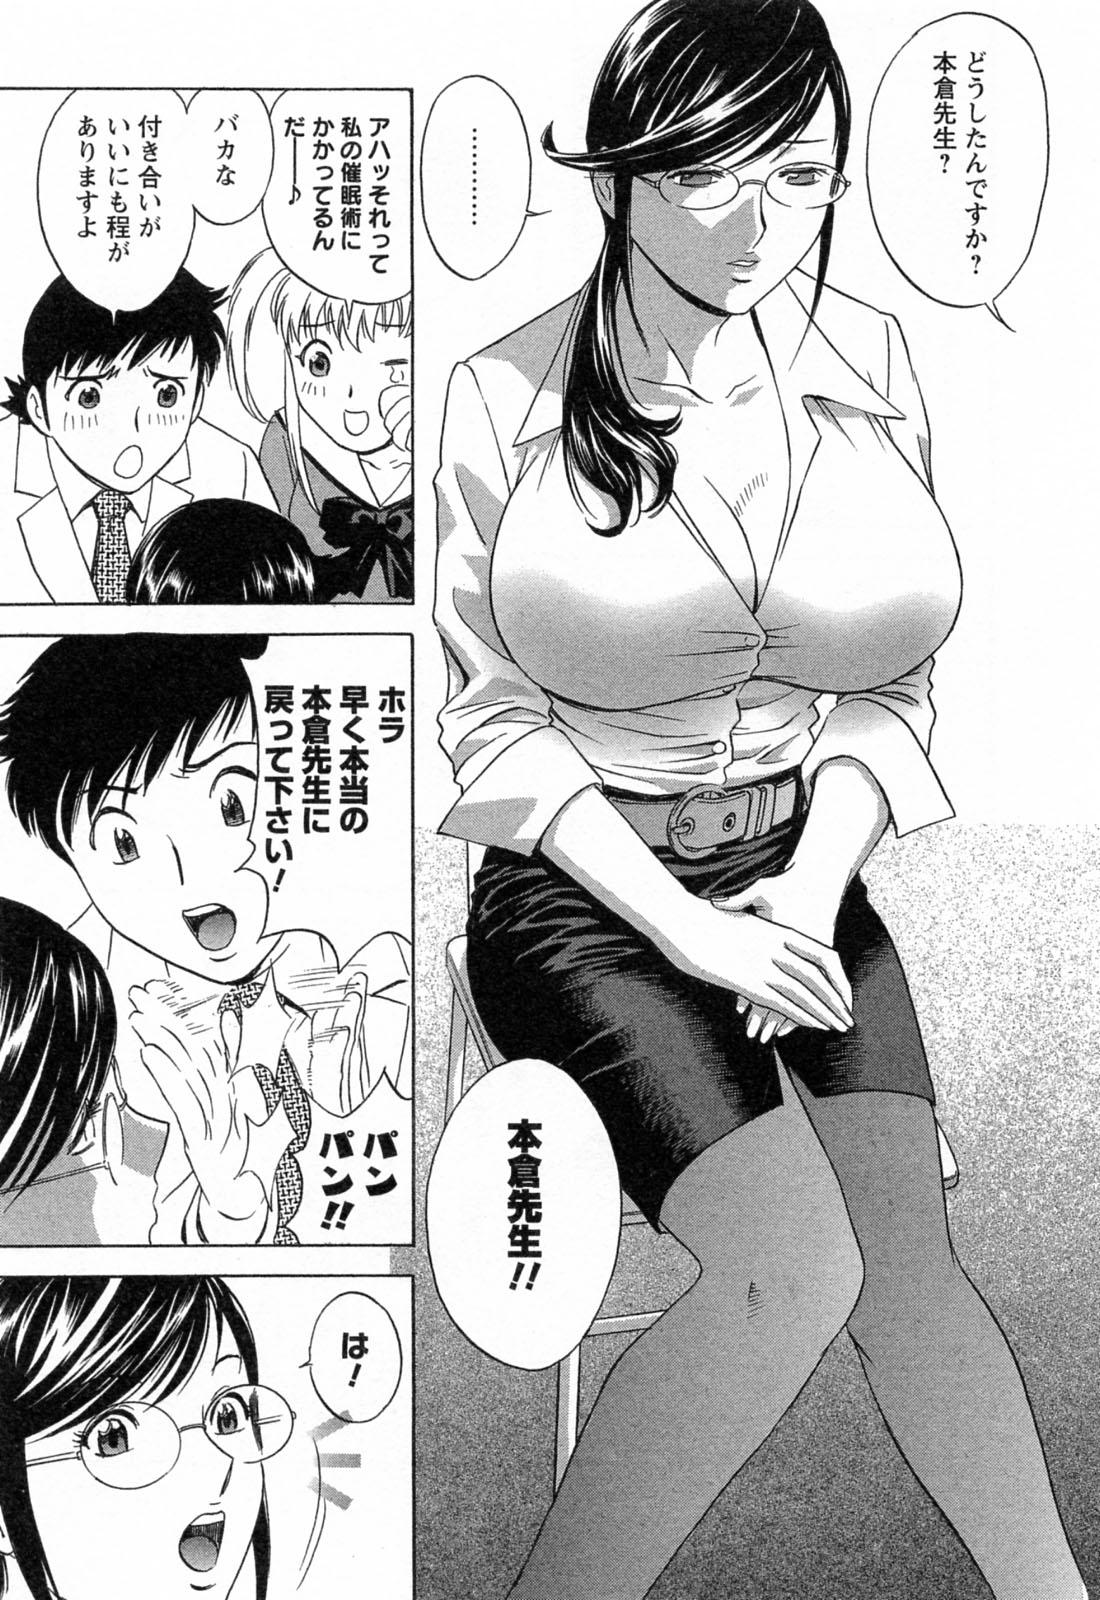 [Hidemaru] Mo-Retsu! Boin Sensei (Boing Boing Teacher) Vol.4 140